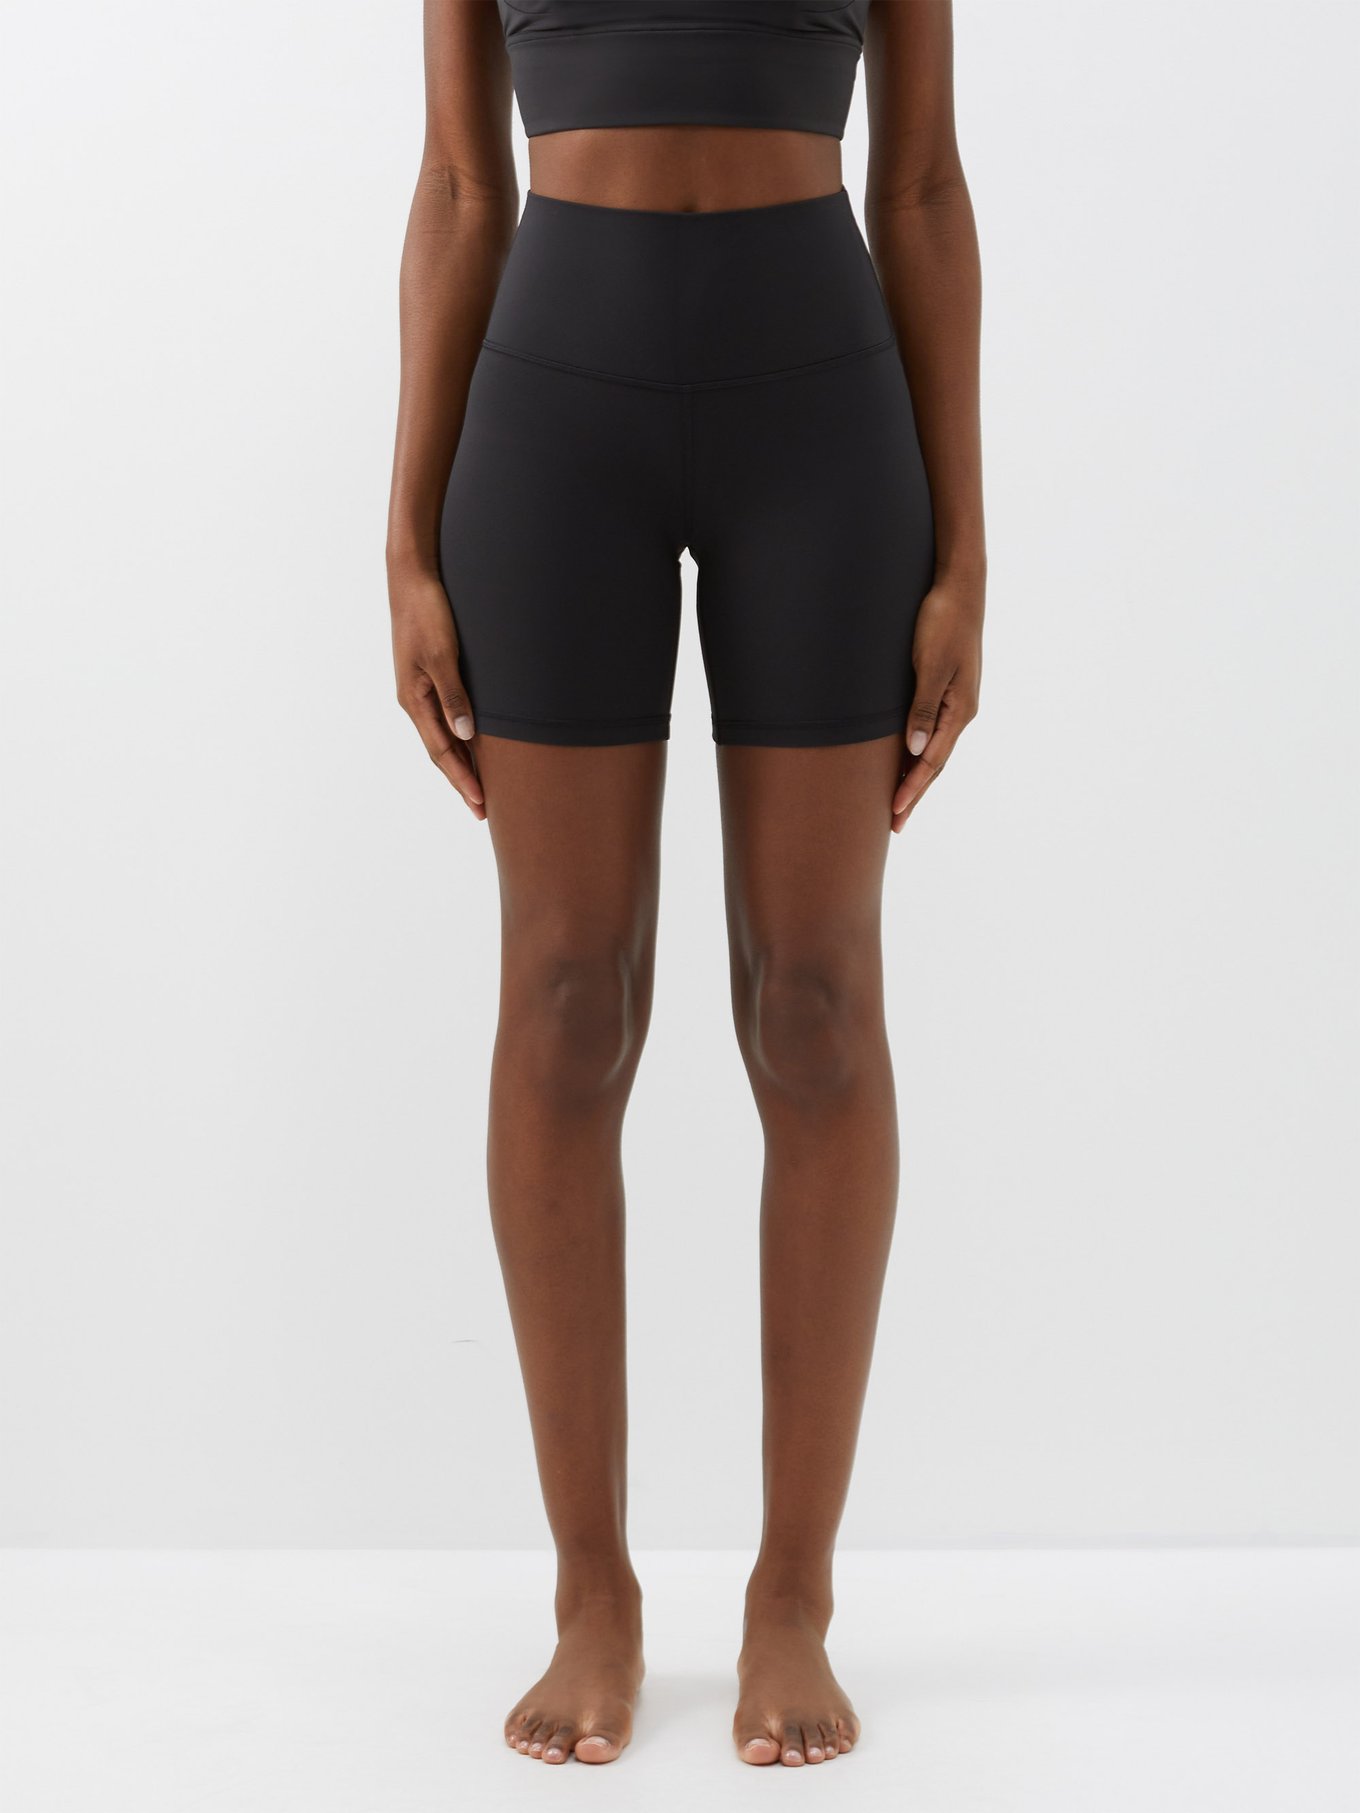 Align HR Short 6″ Women's Shorts Black